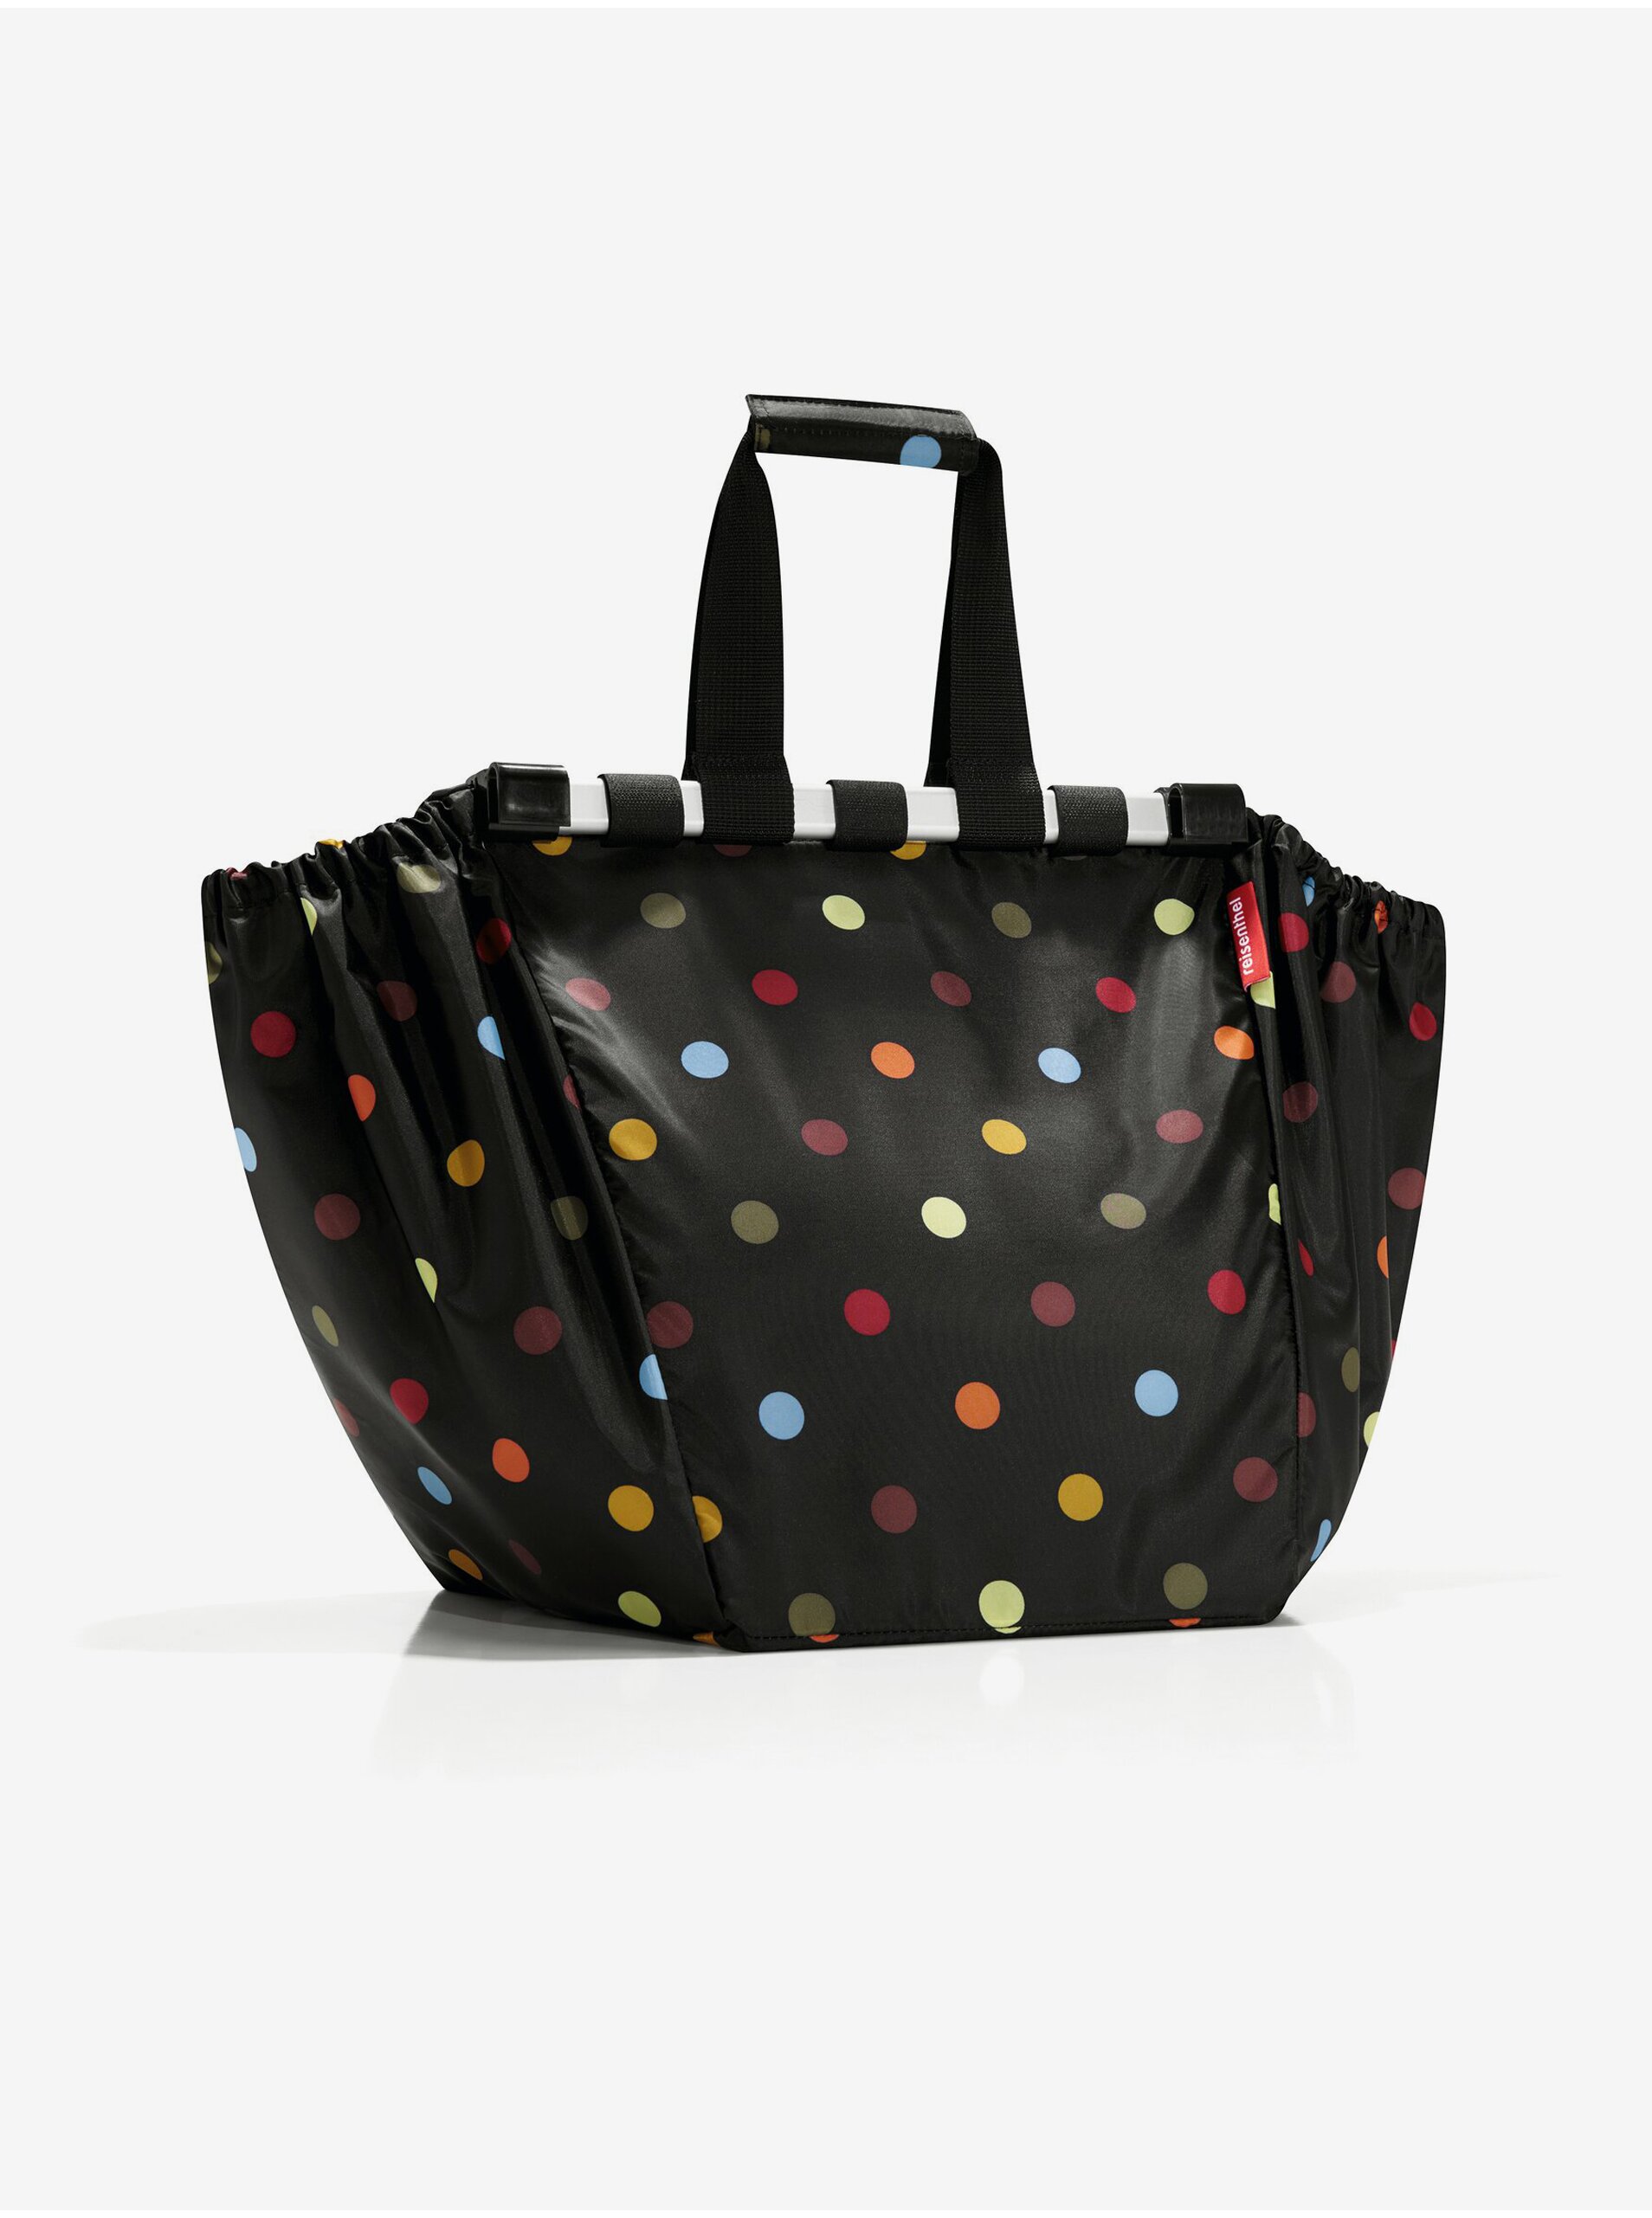 E-shop Černá unisex puntíkovaná nákupní taška Reisenthel Easyshoppingbag